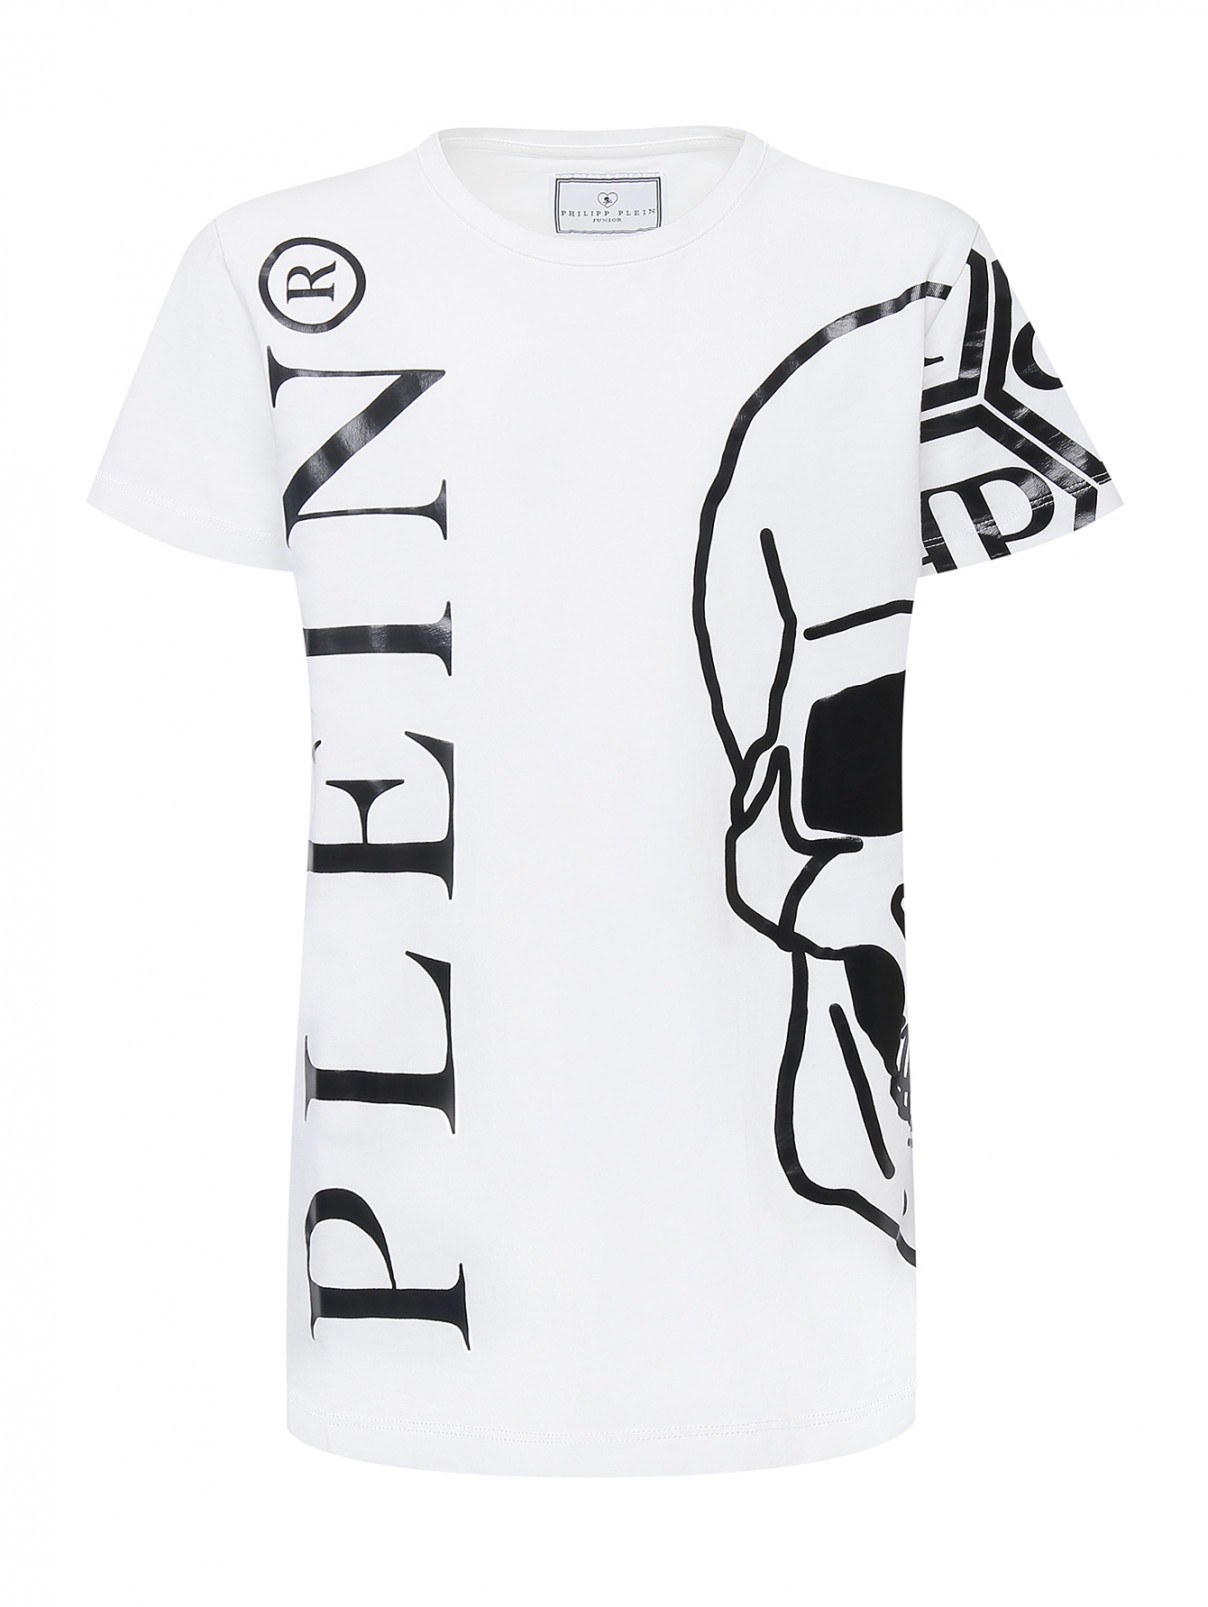 Хлопковая футболка с контрастным принтом Philipp Plein  –  Общий вид  – Цвет:  Белый